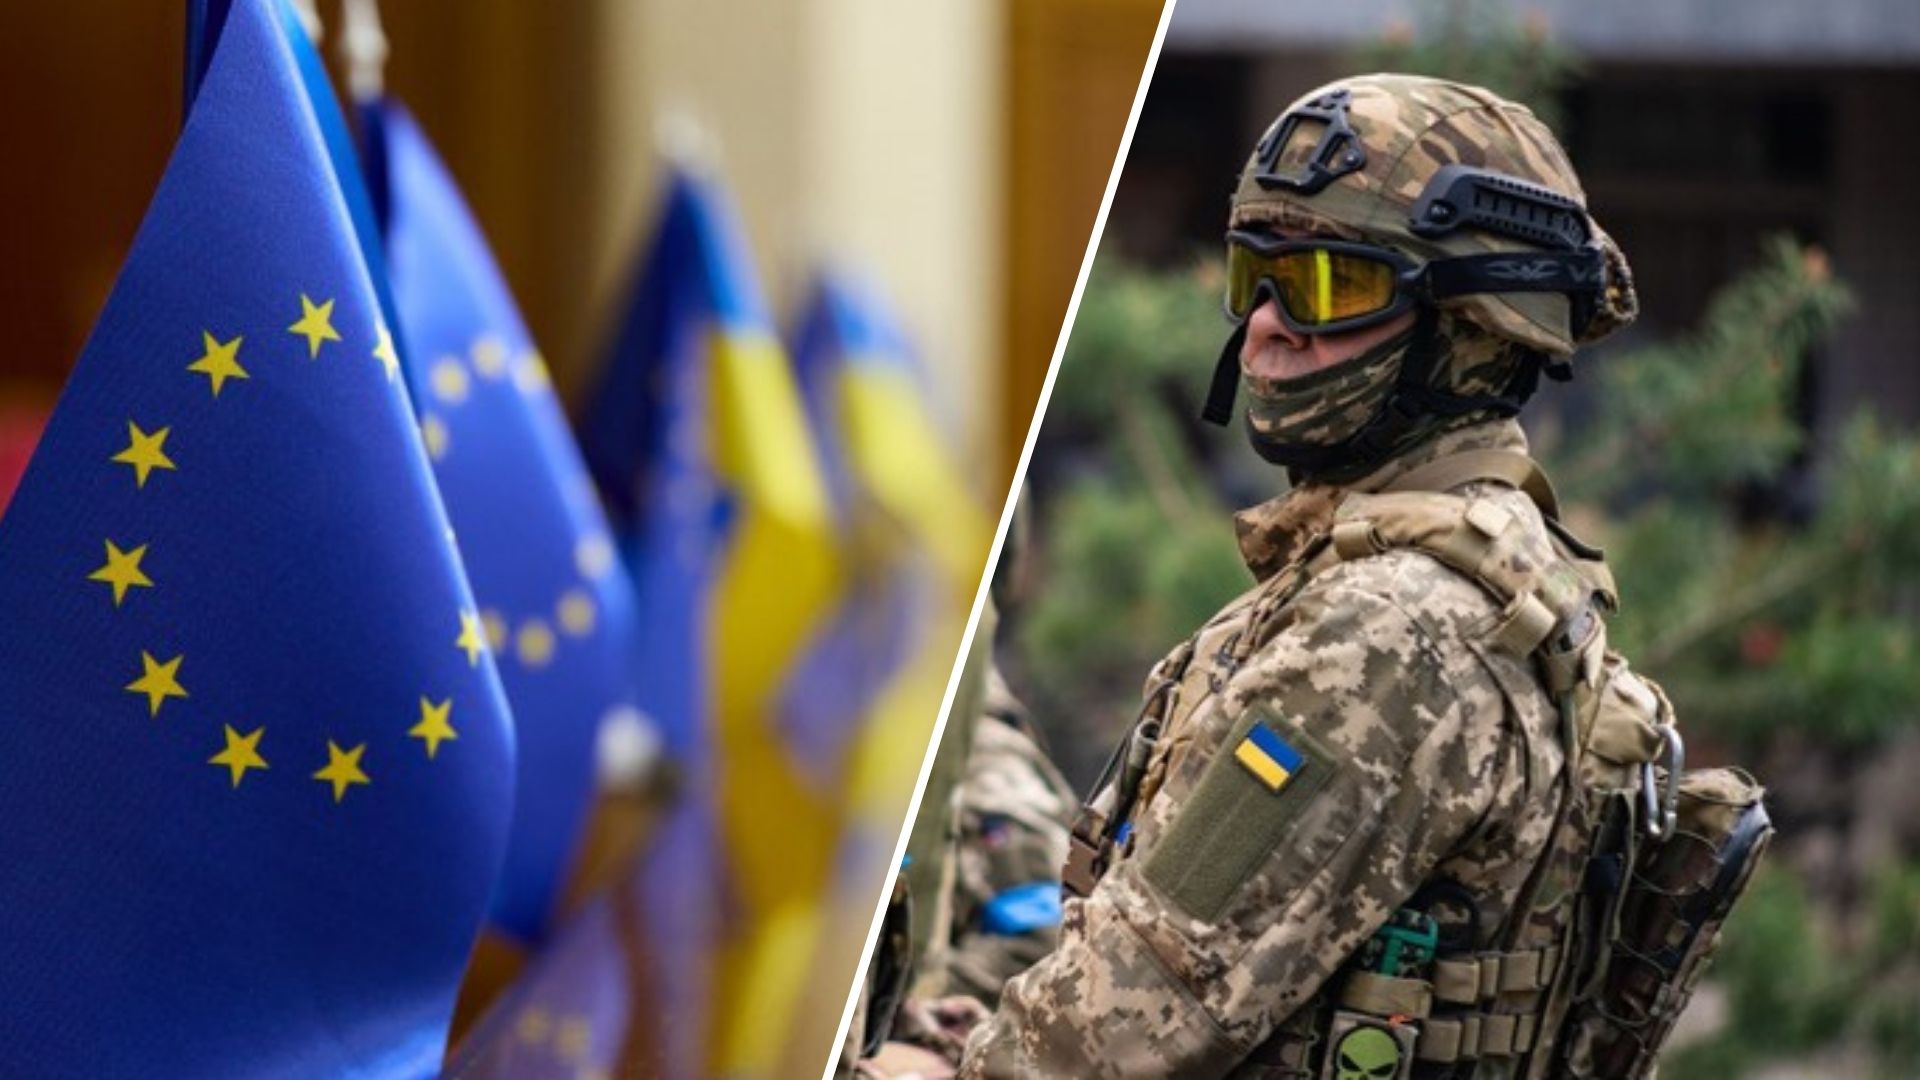 Az Európai Bizottság és Josep Borrell, az Unió főképviselője előterjesztette az első uniós szintű európai védelmi ipari stratégiát, amely szorosabb együttműködést irányoz elő Ukrajnával, és ambiciózus új intézkedéscsomagot javasolt az európai védelmi ipar versenyképességének és felkészültségének támogatására.